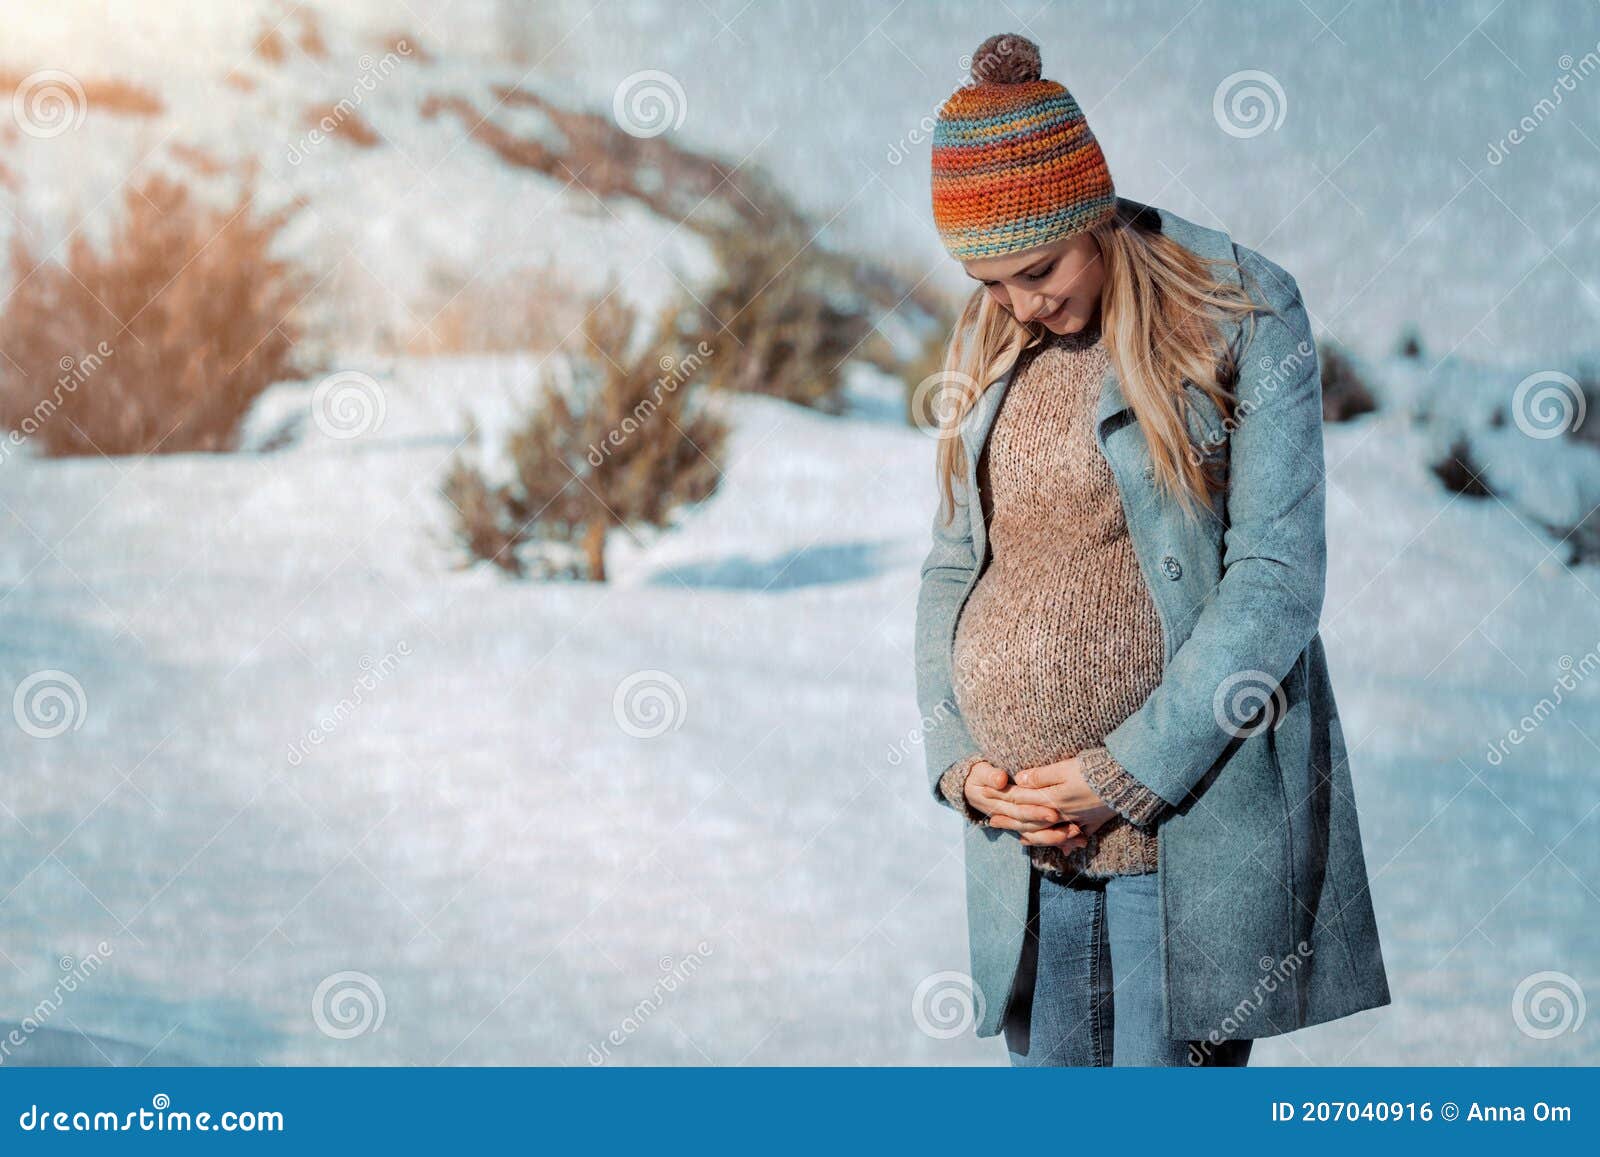 时尚孕妇装秋冬月子服休闲纯色孕妇家居服哺乳衣外出孕妇套装批发-阿里巴巴